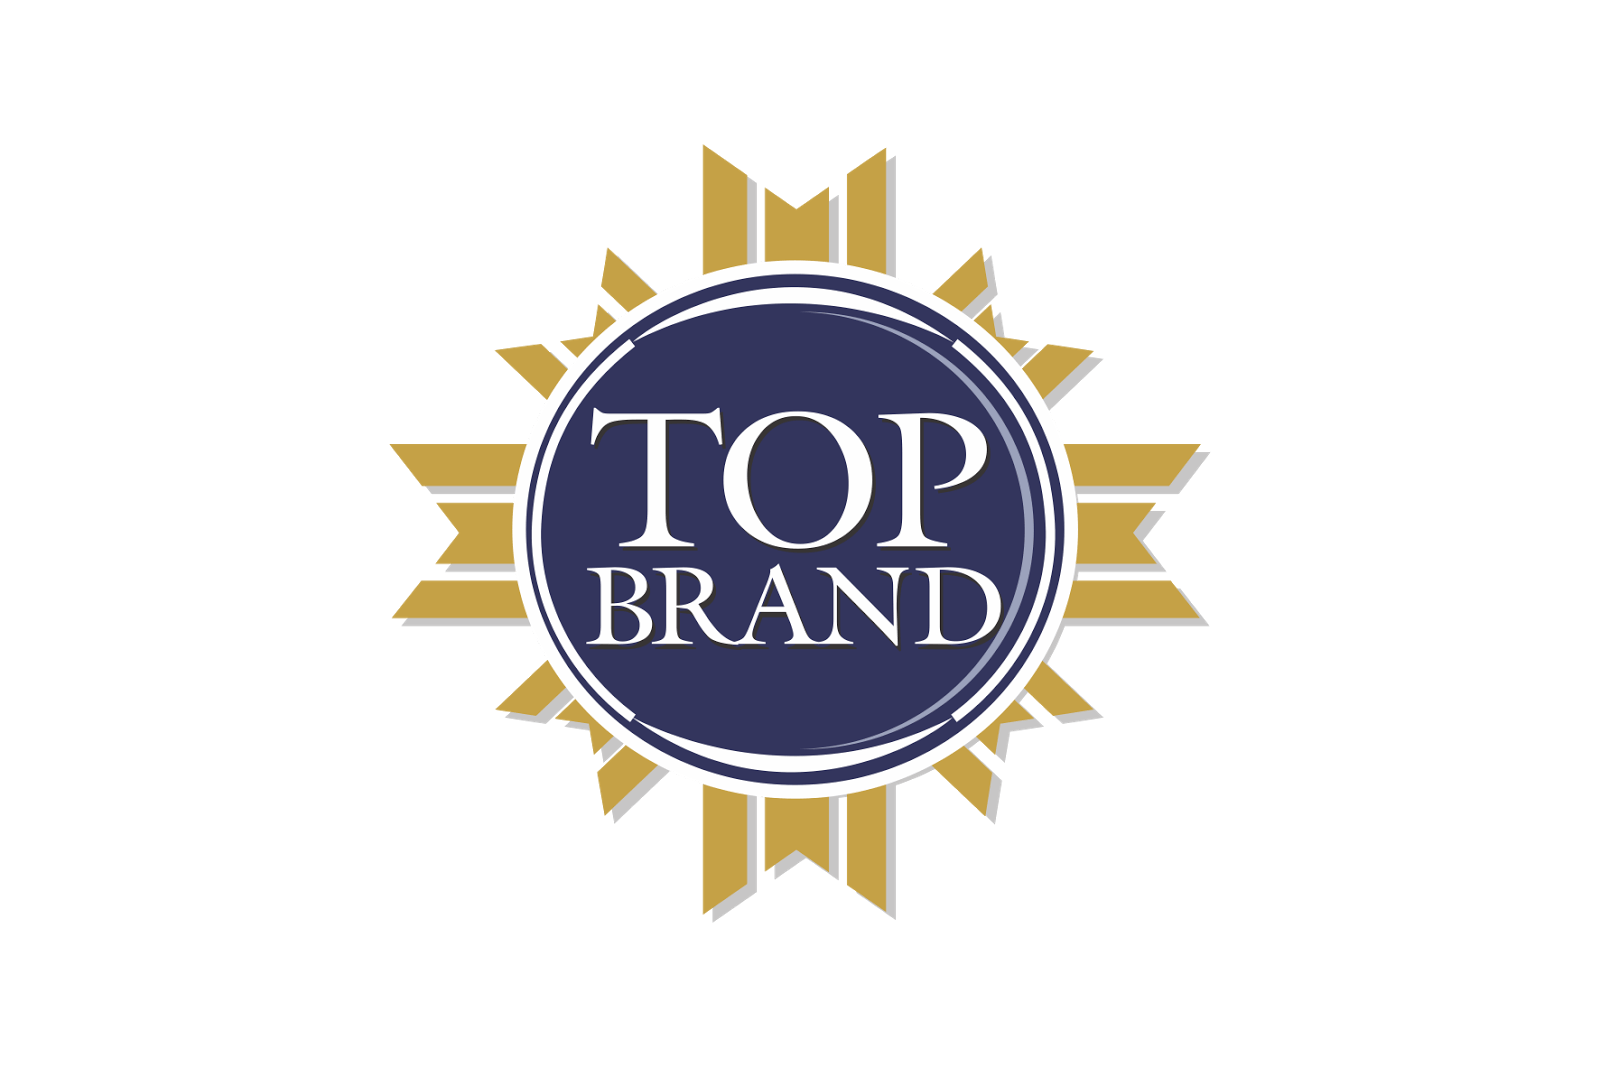 Top Brand Logo - Top Brand Logo - logo cdr vector